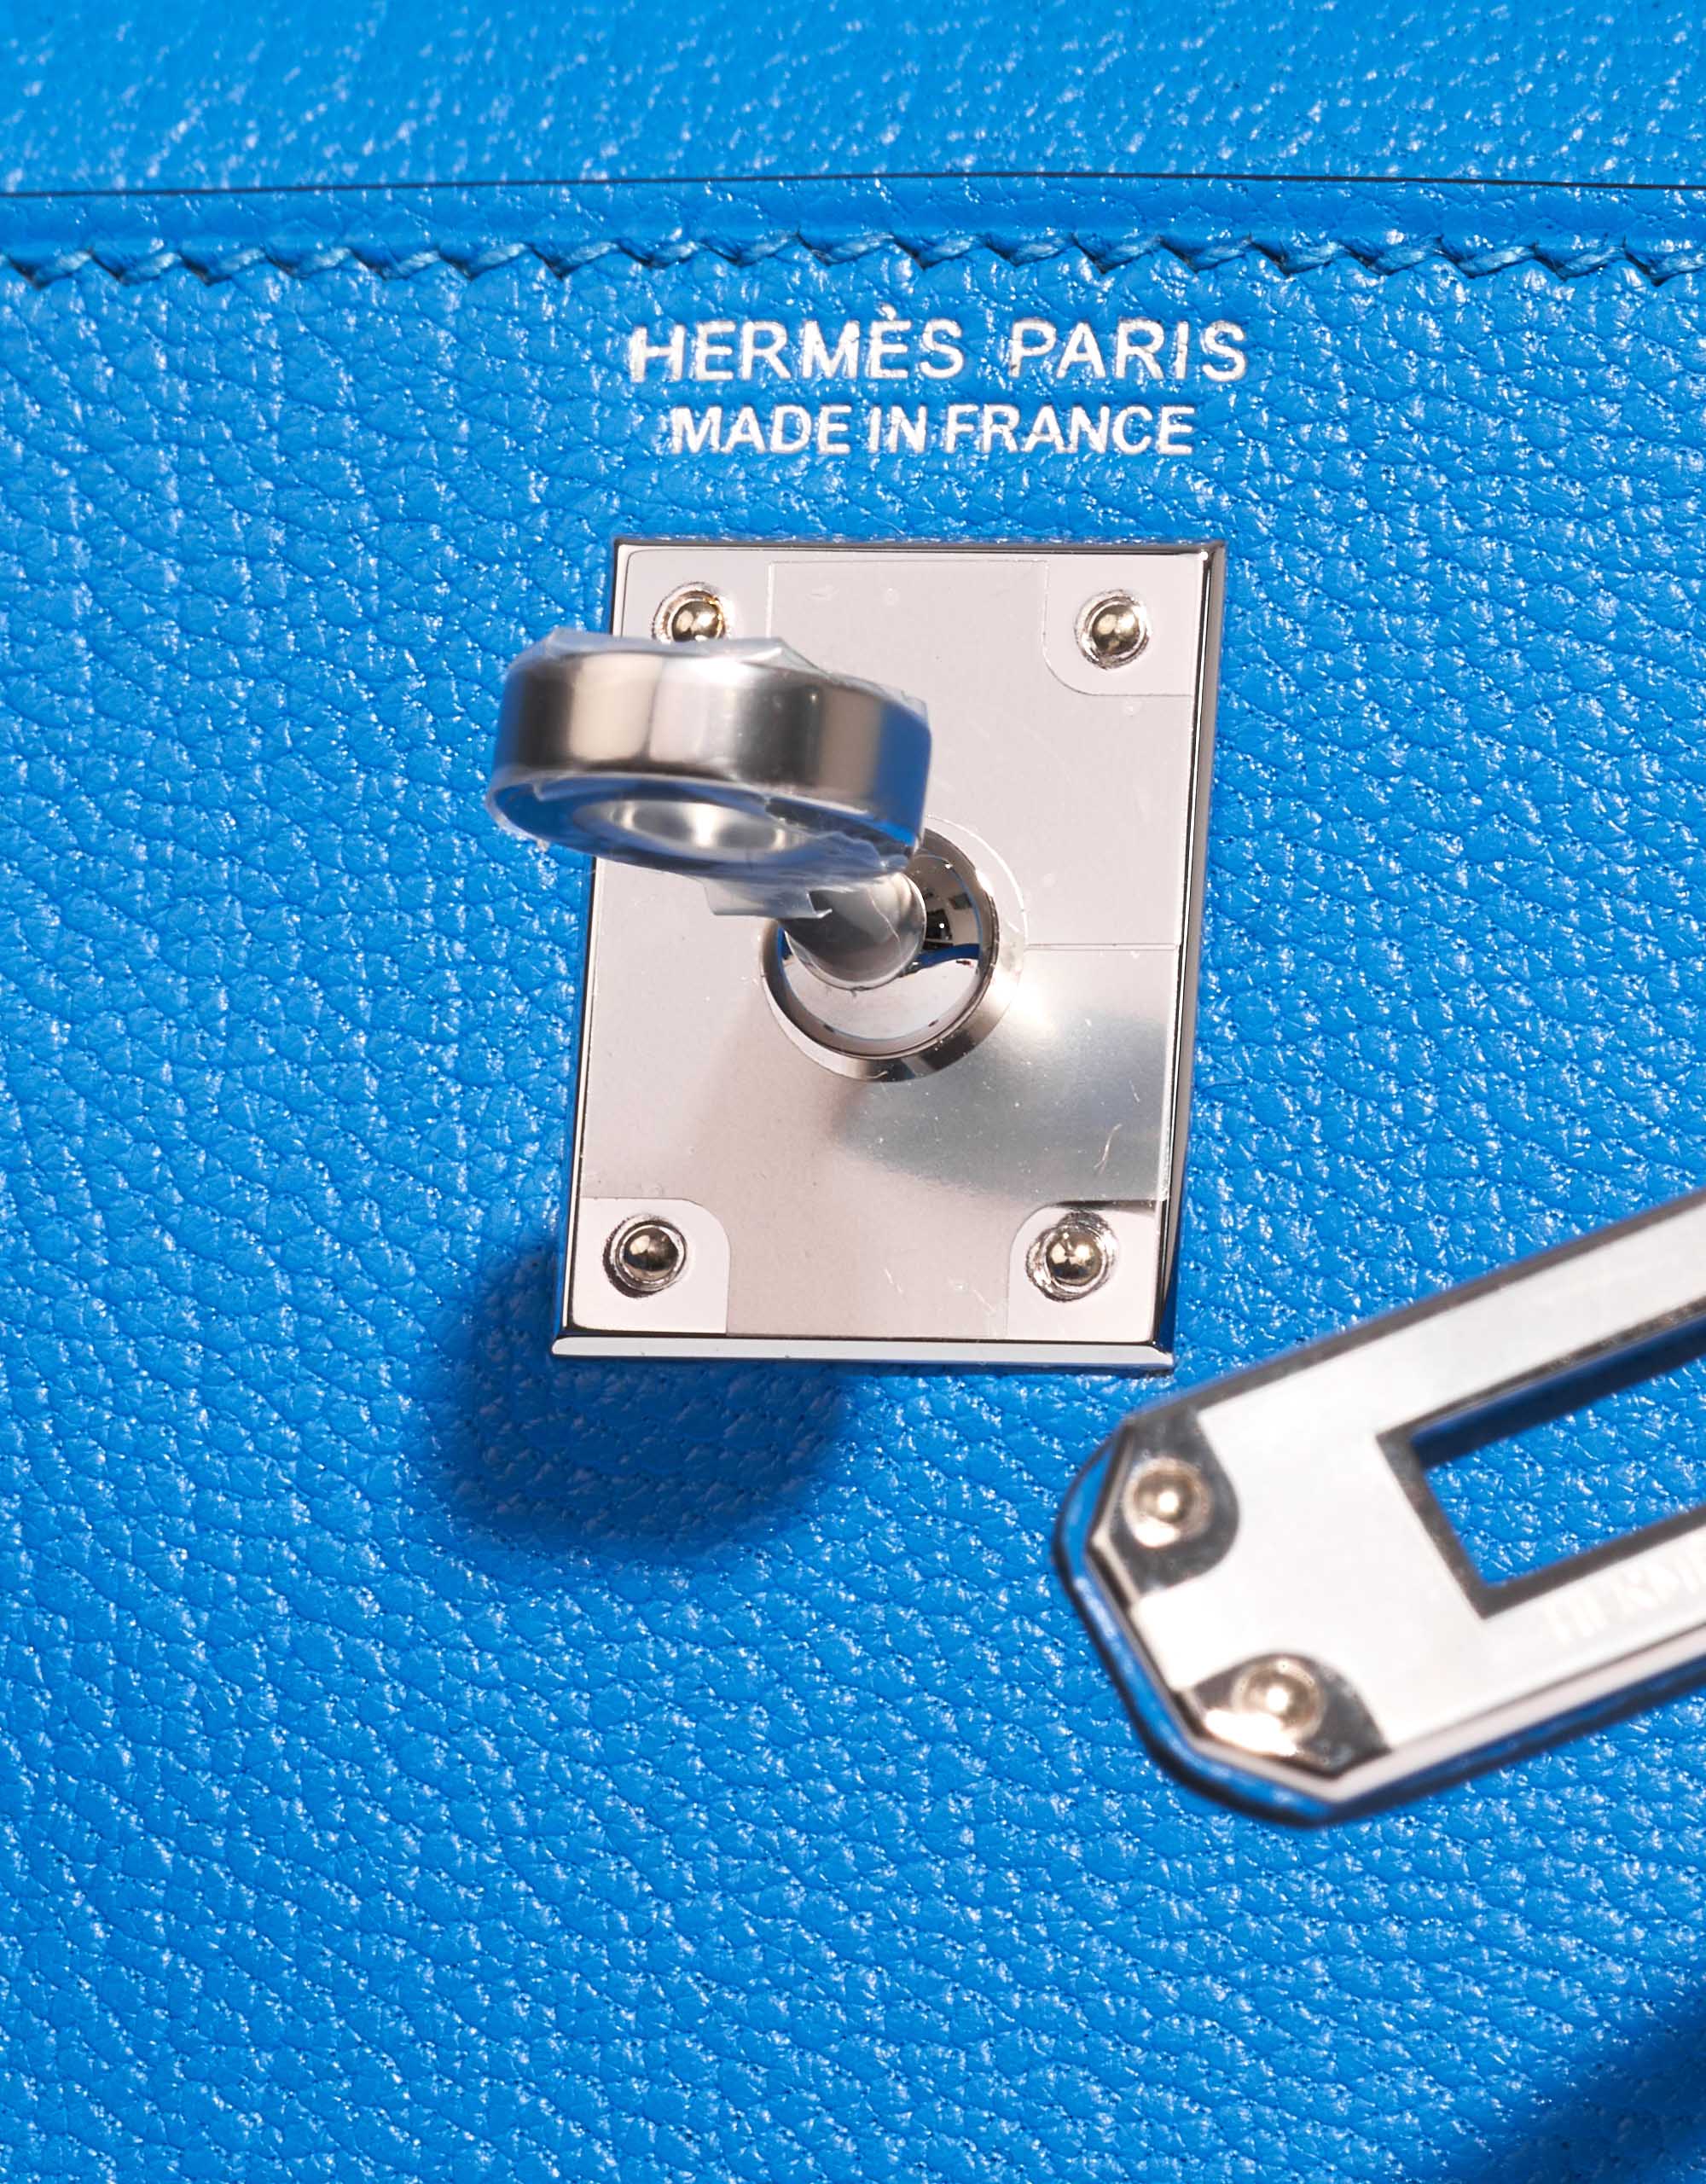 Gebrauchte Hermès Tasche Kelly Mini Chèvre Mysore Blau Hydra Blau Verschlusssystem | Verkaufen Sie Ihre Designer-Tasche auf Saclab.com